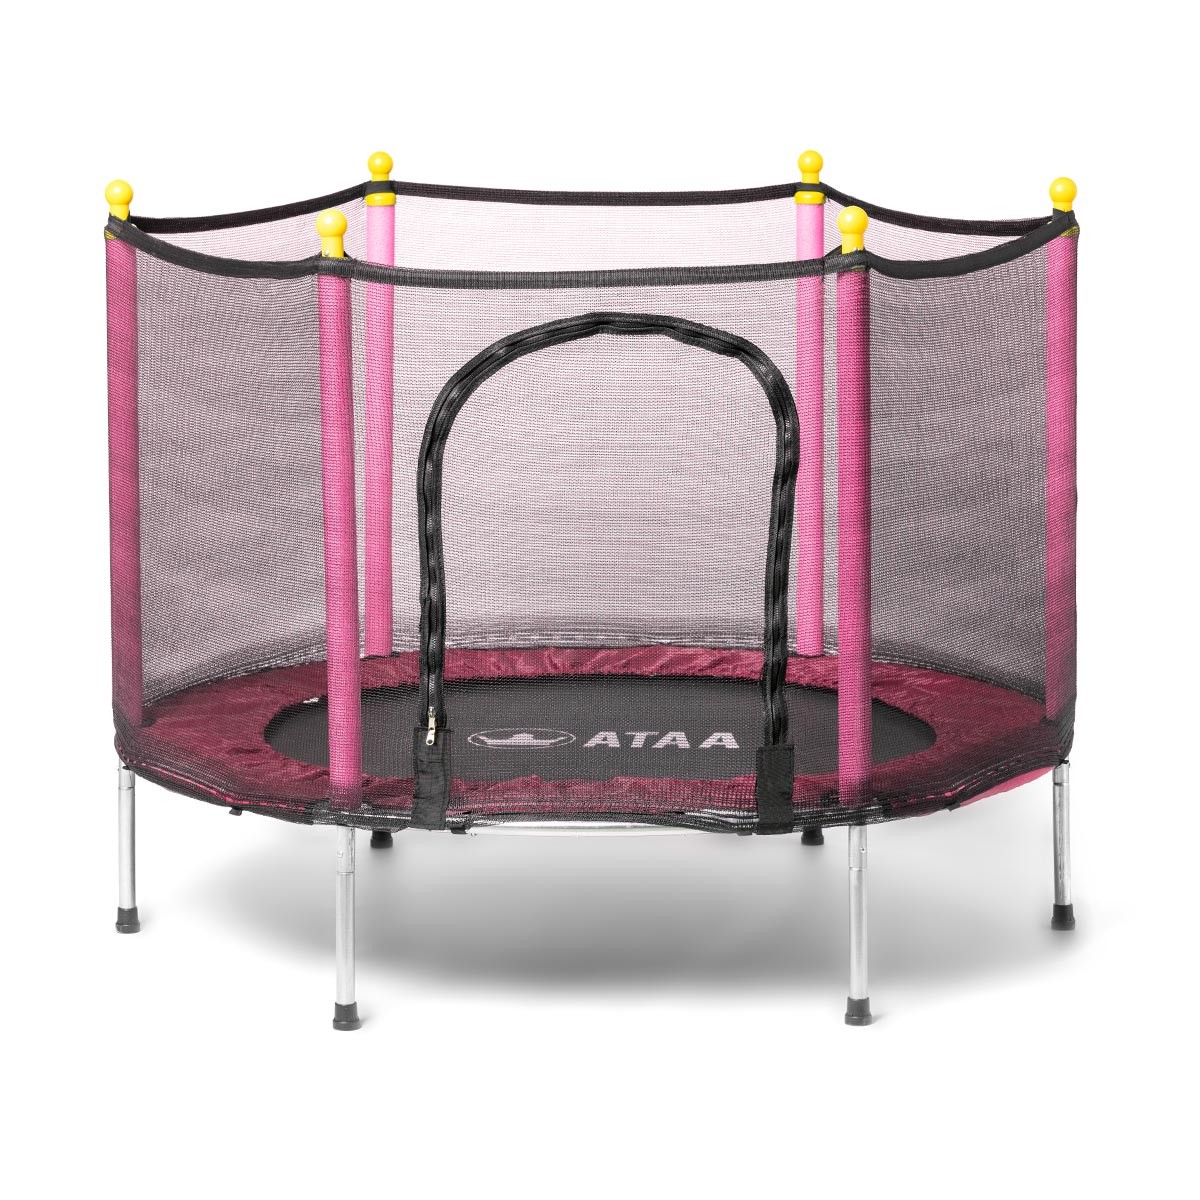 Trampolim infantil salgado com 140 cm de diâmetro O trampolim Salty